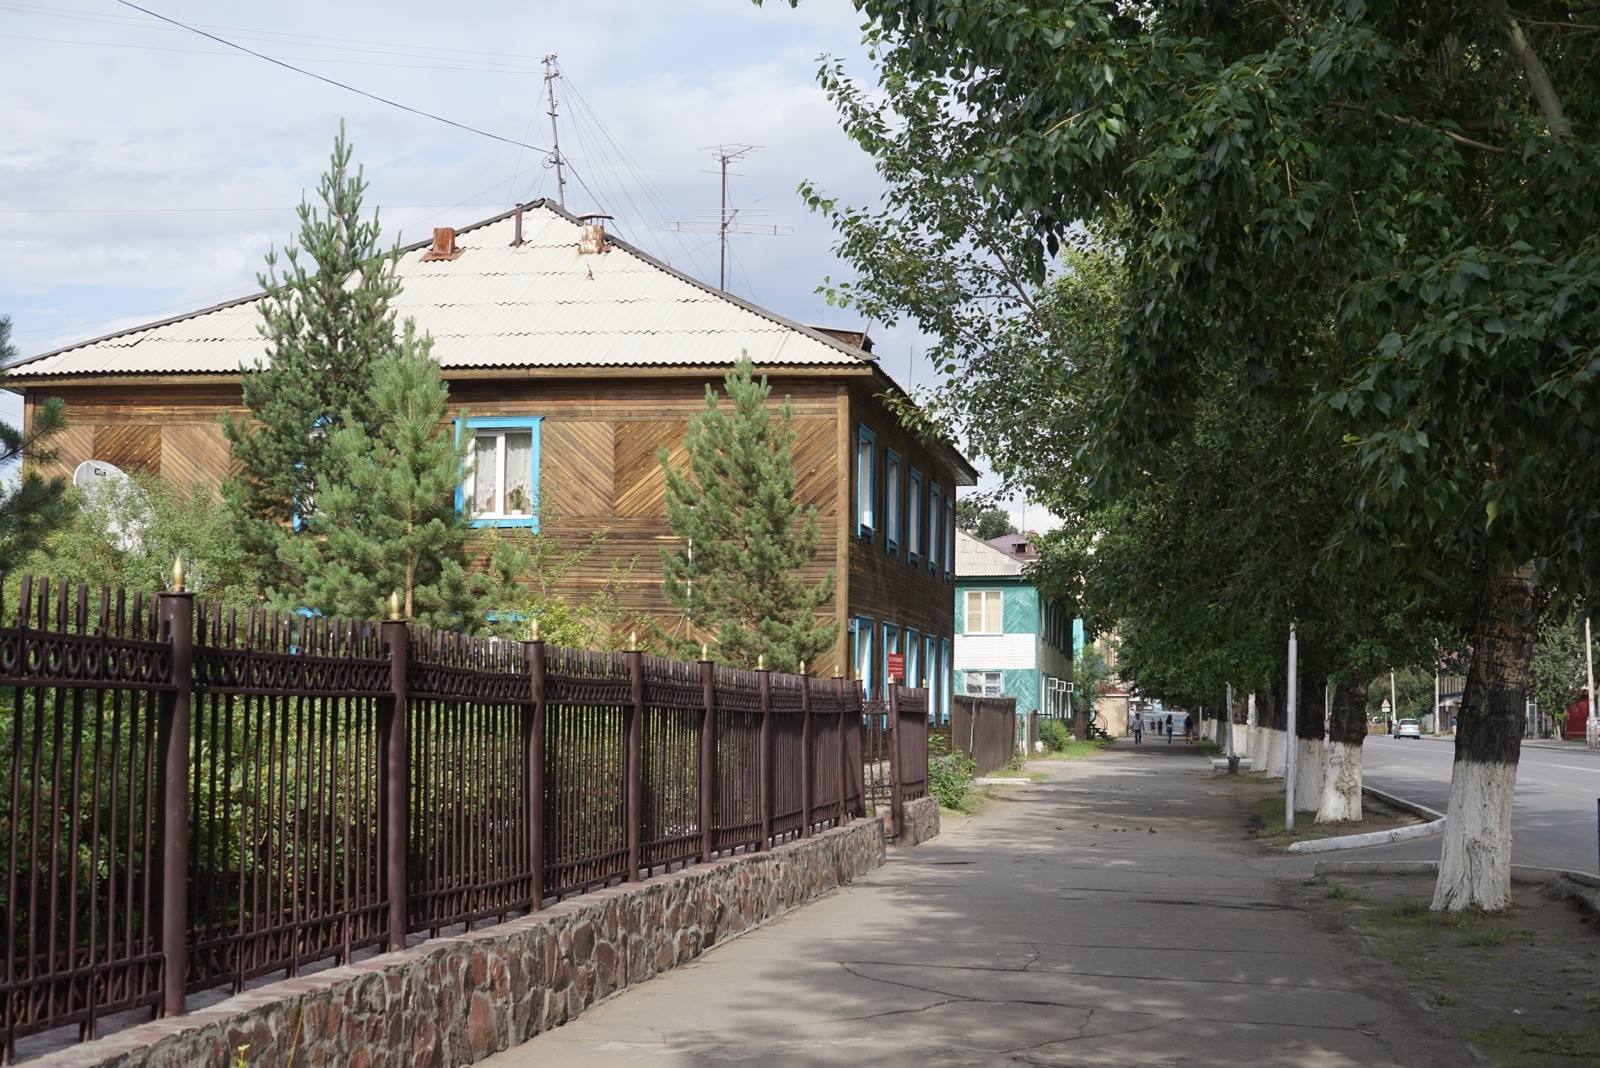 Kyzyl street